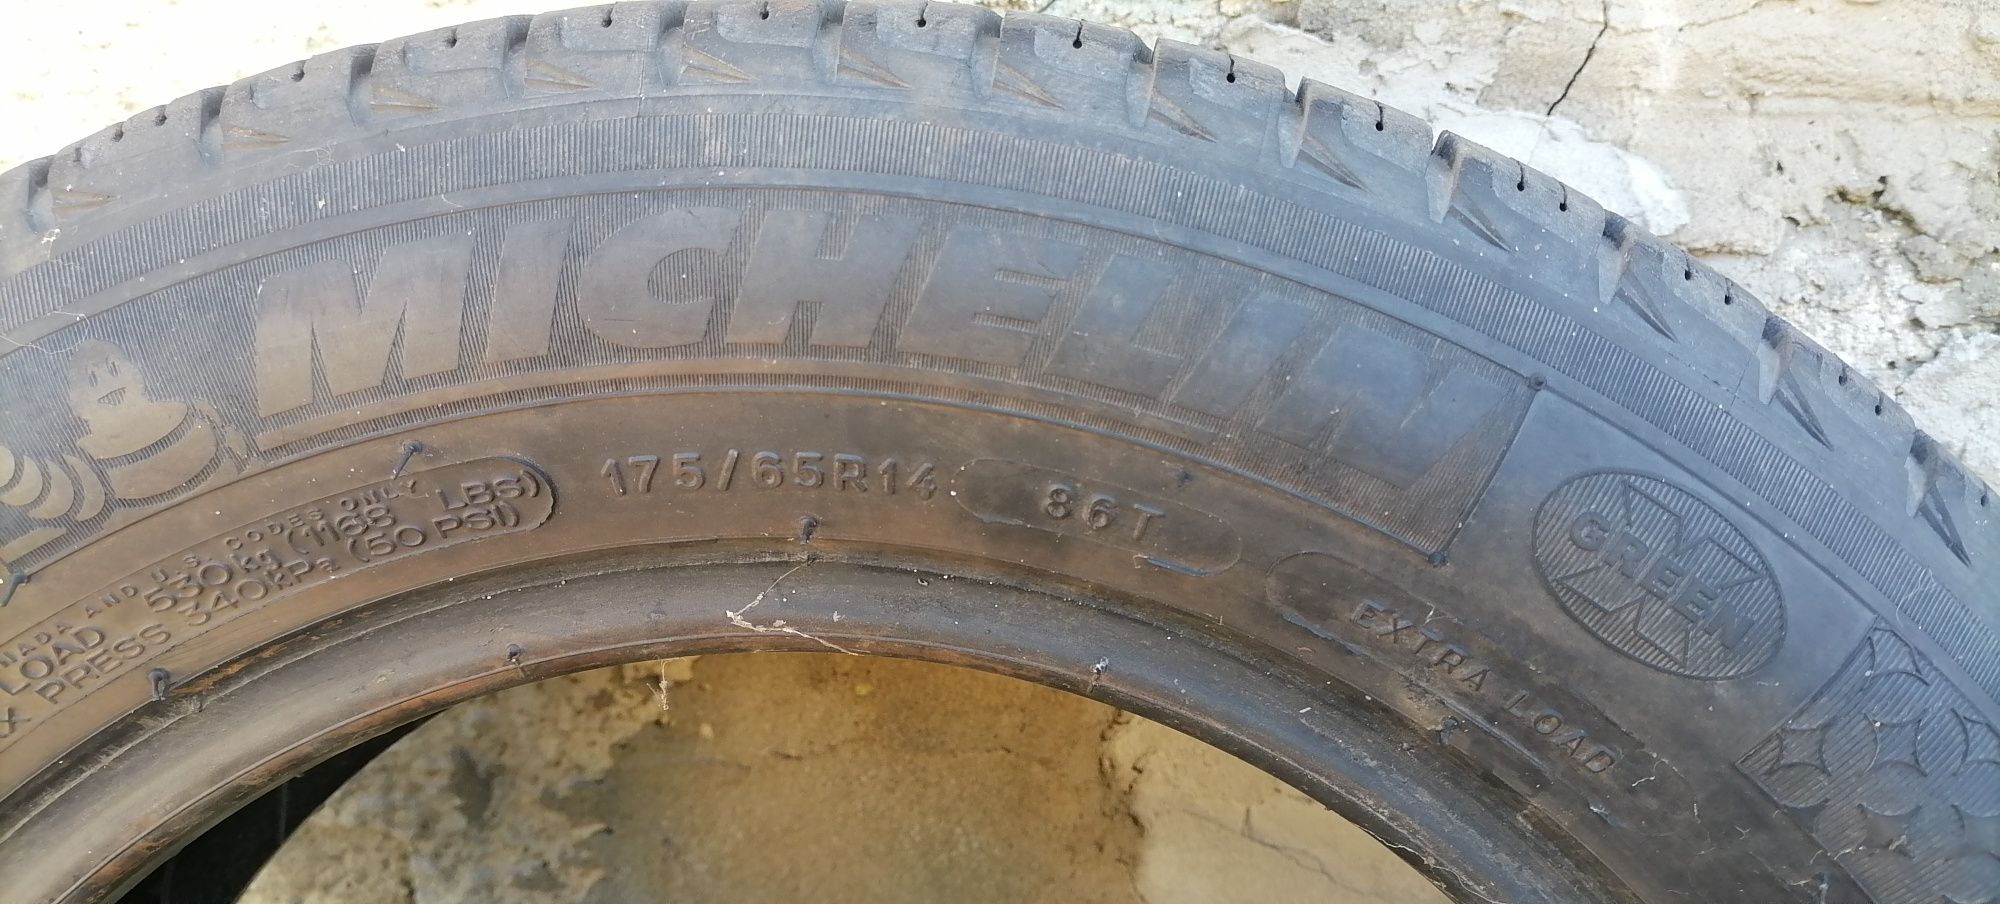 175/65/R14 Зима Michelin Одно колесо